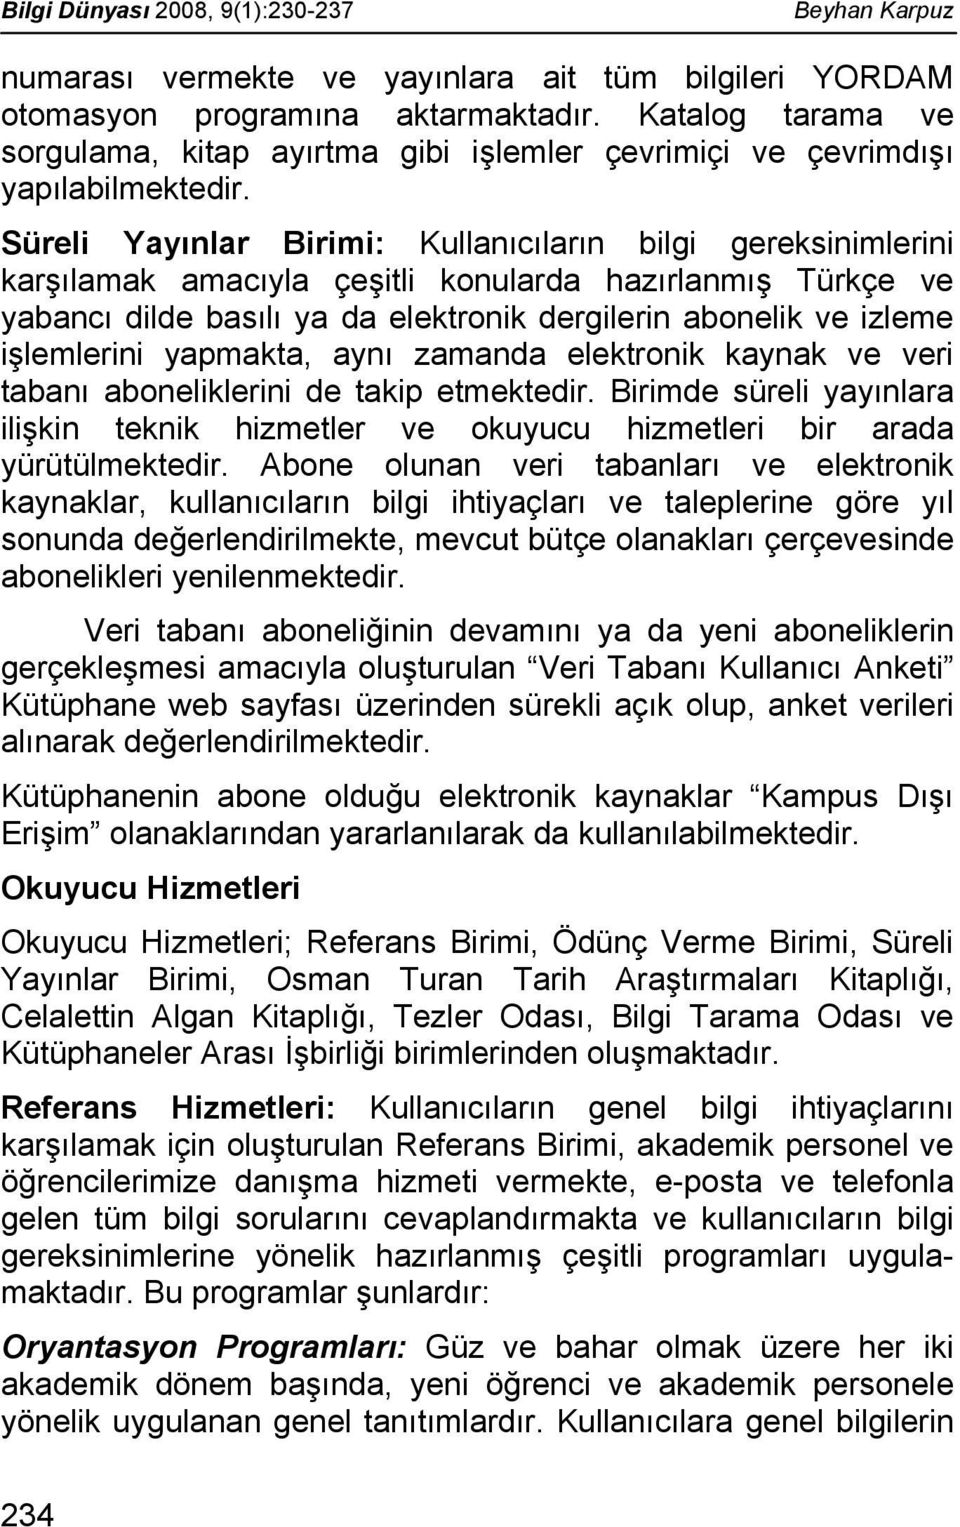 Süreli Yayınlar Birimi: Kullanıcıların bilgi gereksinimlerini karşılamak amacıyla çeşitli konularda hazırlanmış Türkçe ve yabancı dilde basılı ya da elektronik dergilerin abonelik ve izleme